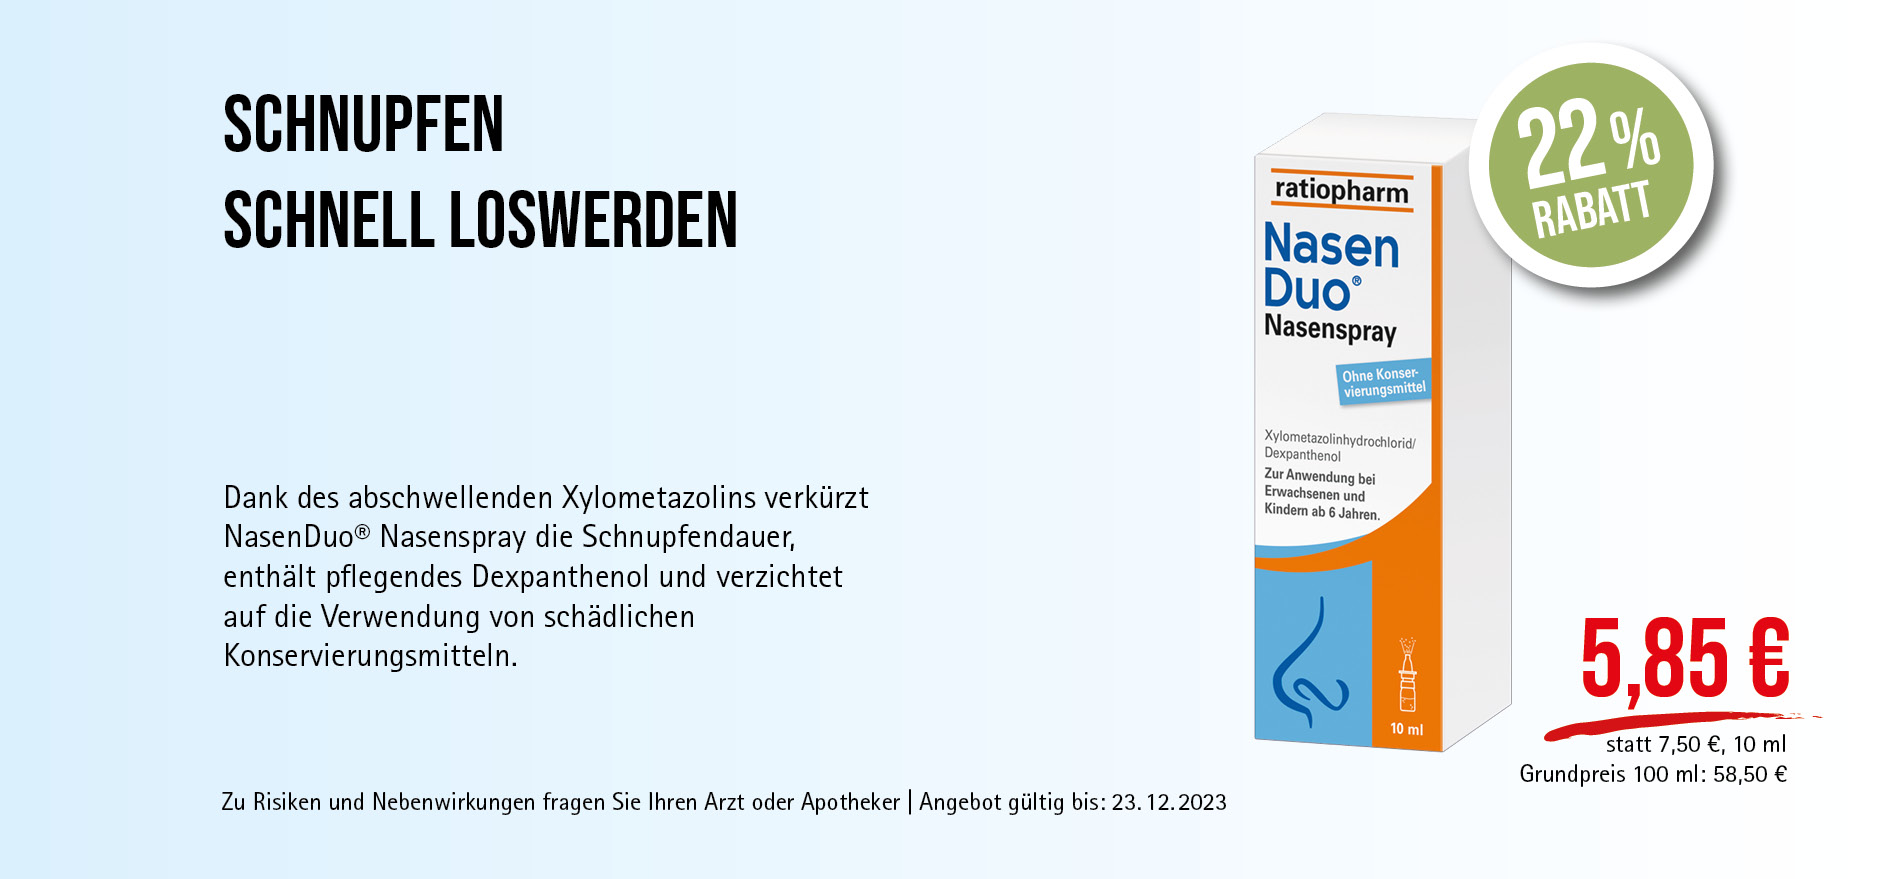 NasenDuo® Nasenspray, 5,85€ statt 7,50€, Angebot gültig bis 23.12.2023, zu Risikien und Nebenwirkungen fragen Sie Ihren Arzt oder Apotheker